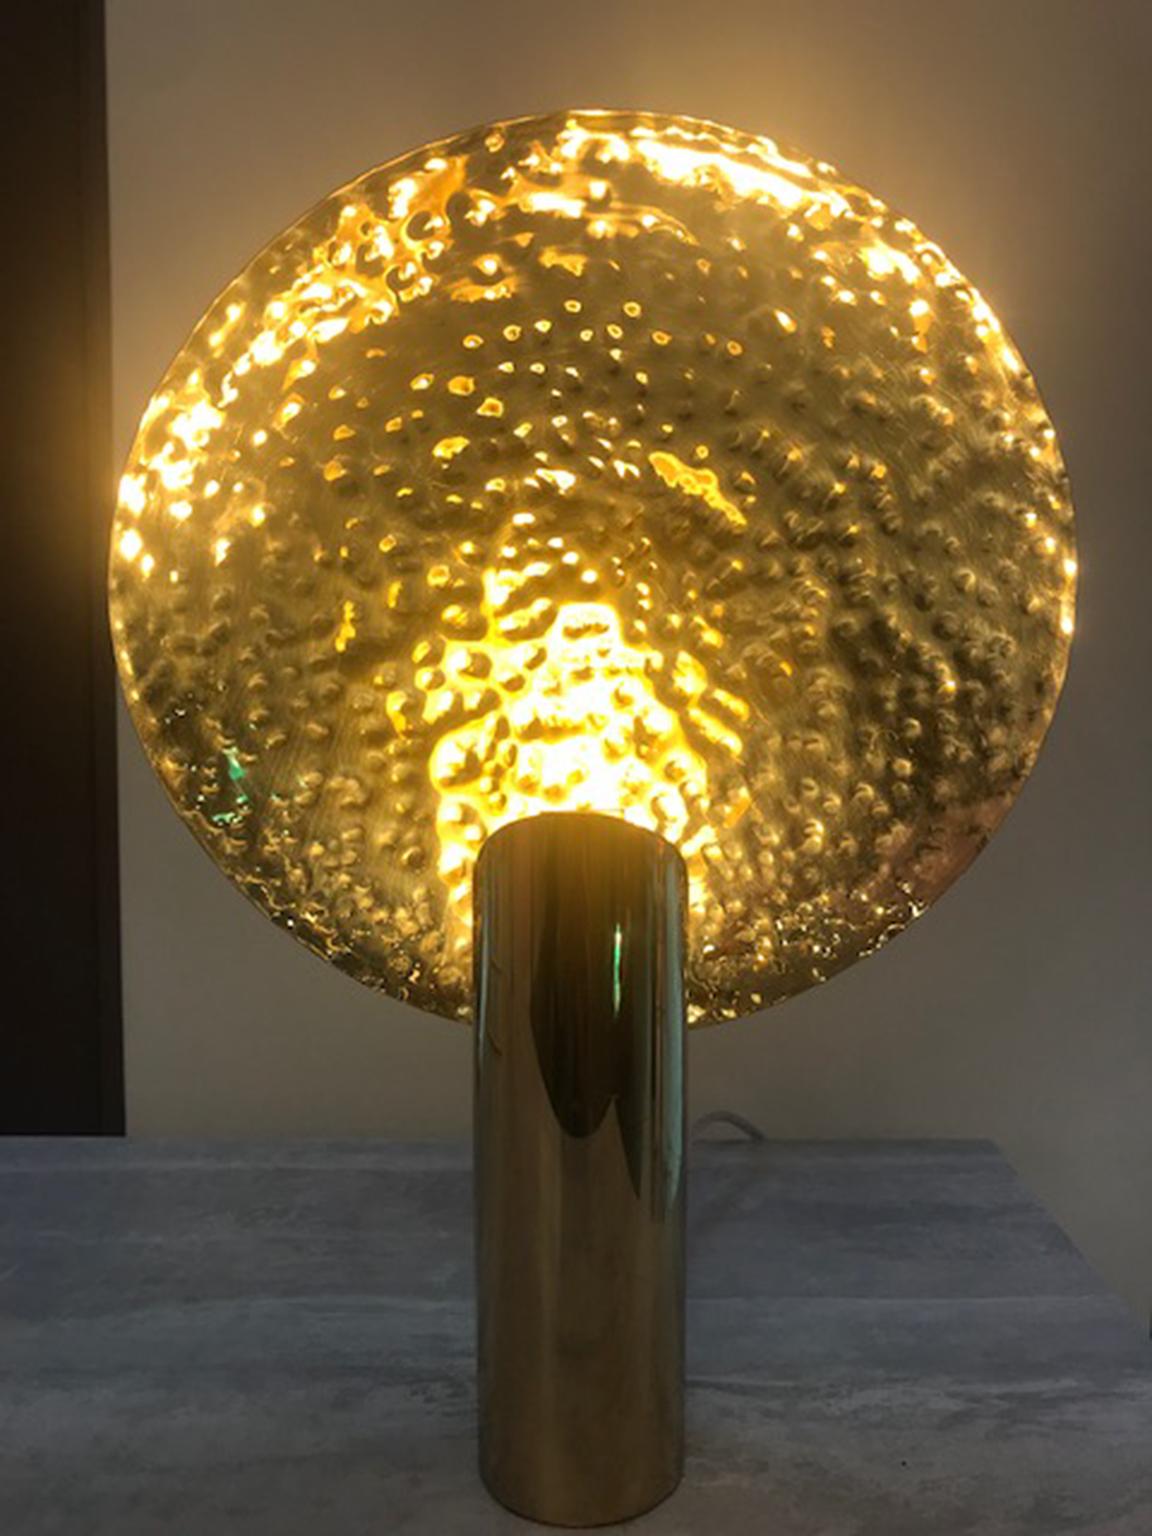 LUNA Zeitgenössische Minimalistische Poetische Tischlampe von Cristiana Bertolucci
Tischleuchte mit kontananischem Design aus poliertem Messing. Strahler aus handgehämmertem Messing. Die Luminaire erzeugt eine schöne Reflexion des Lichts durch den